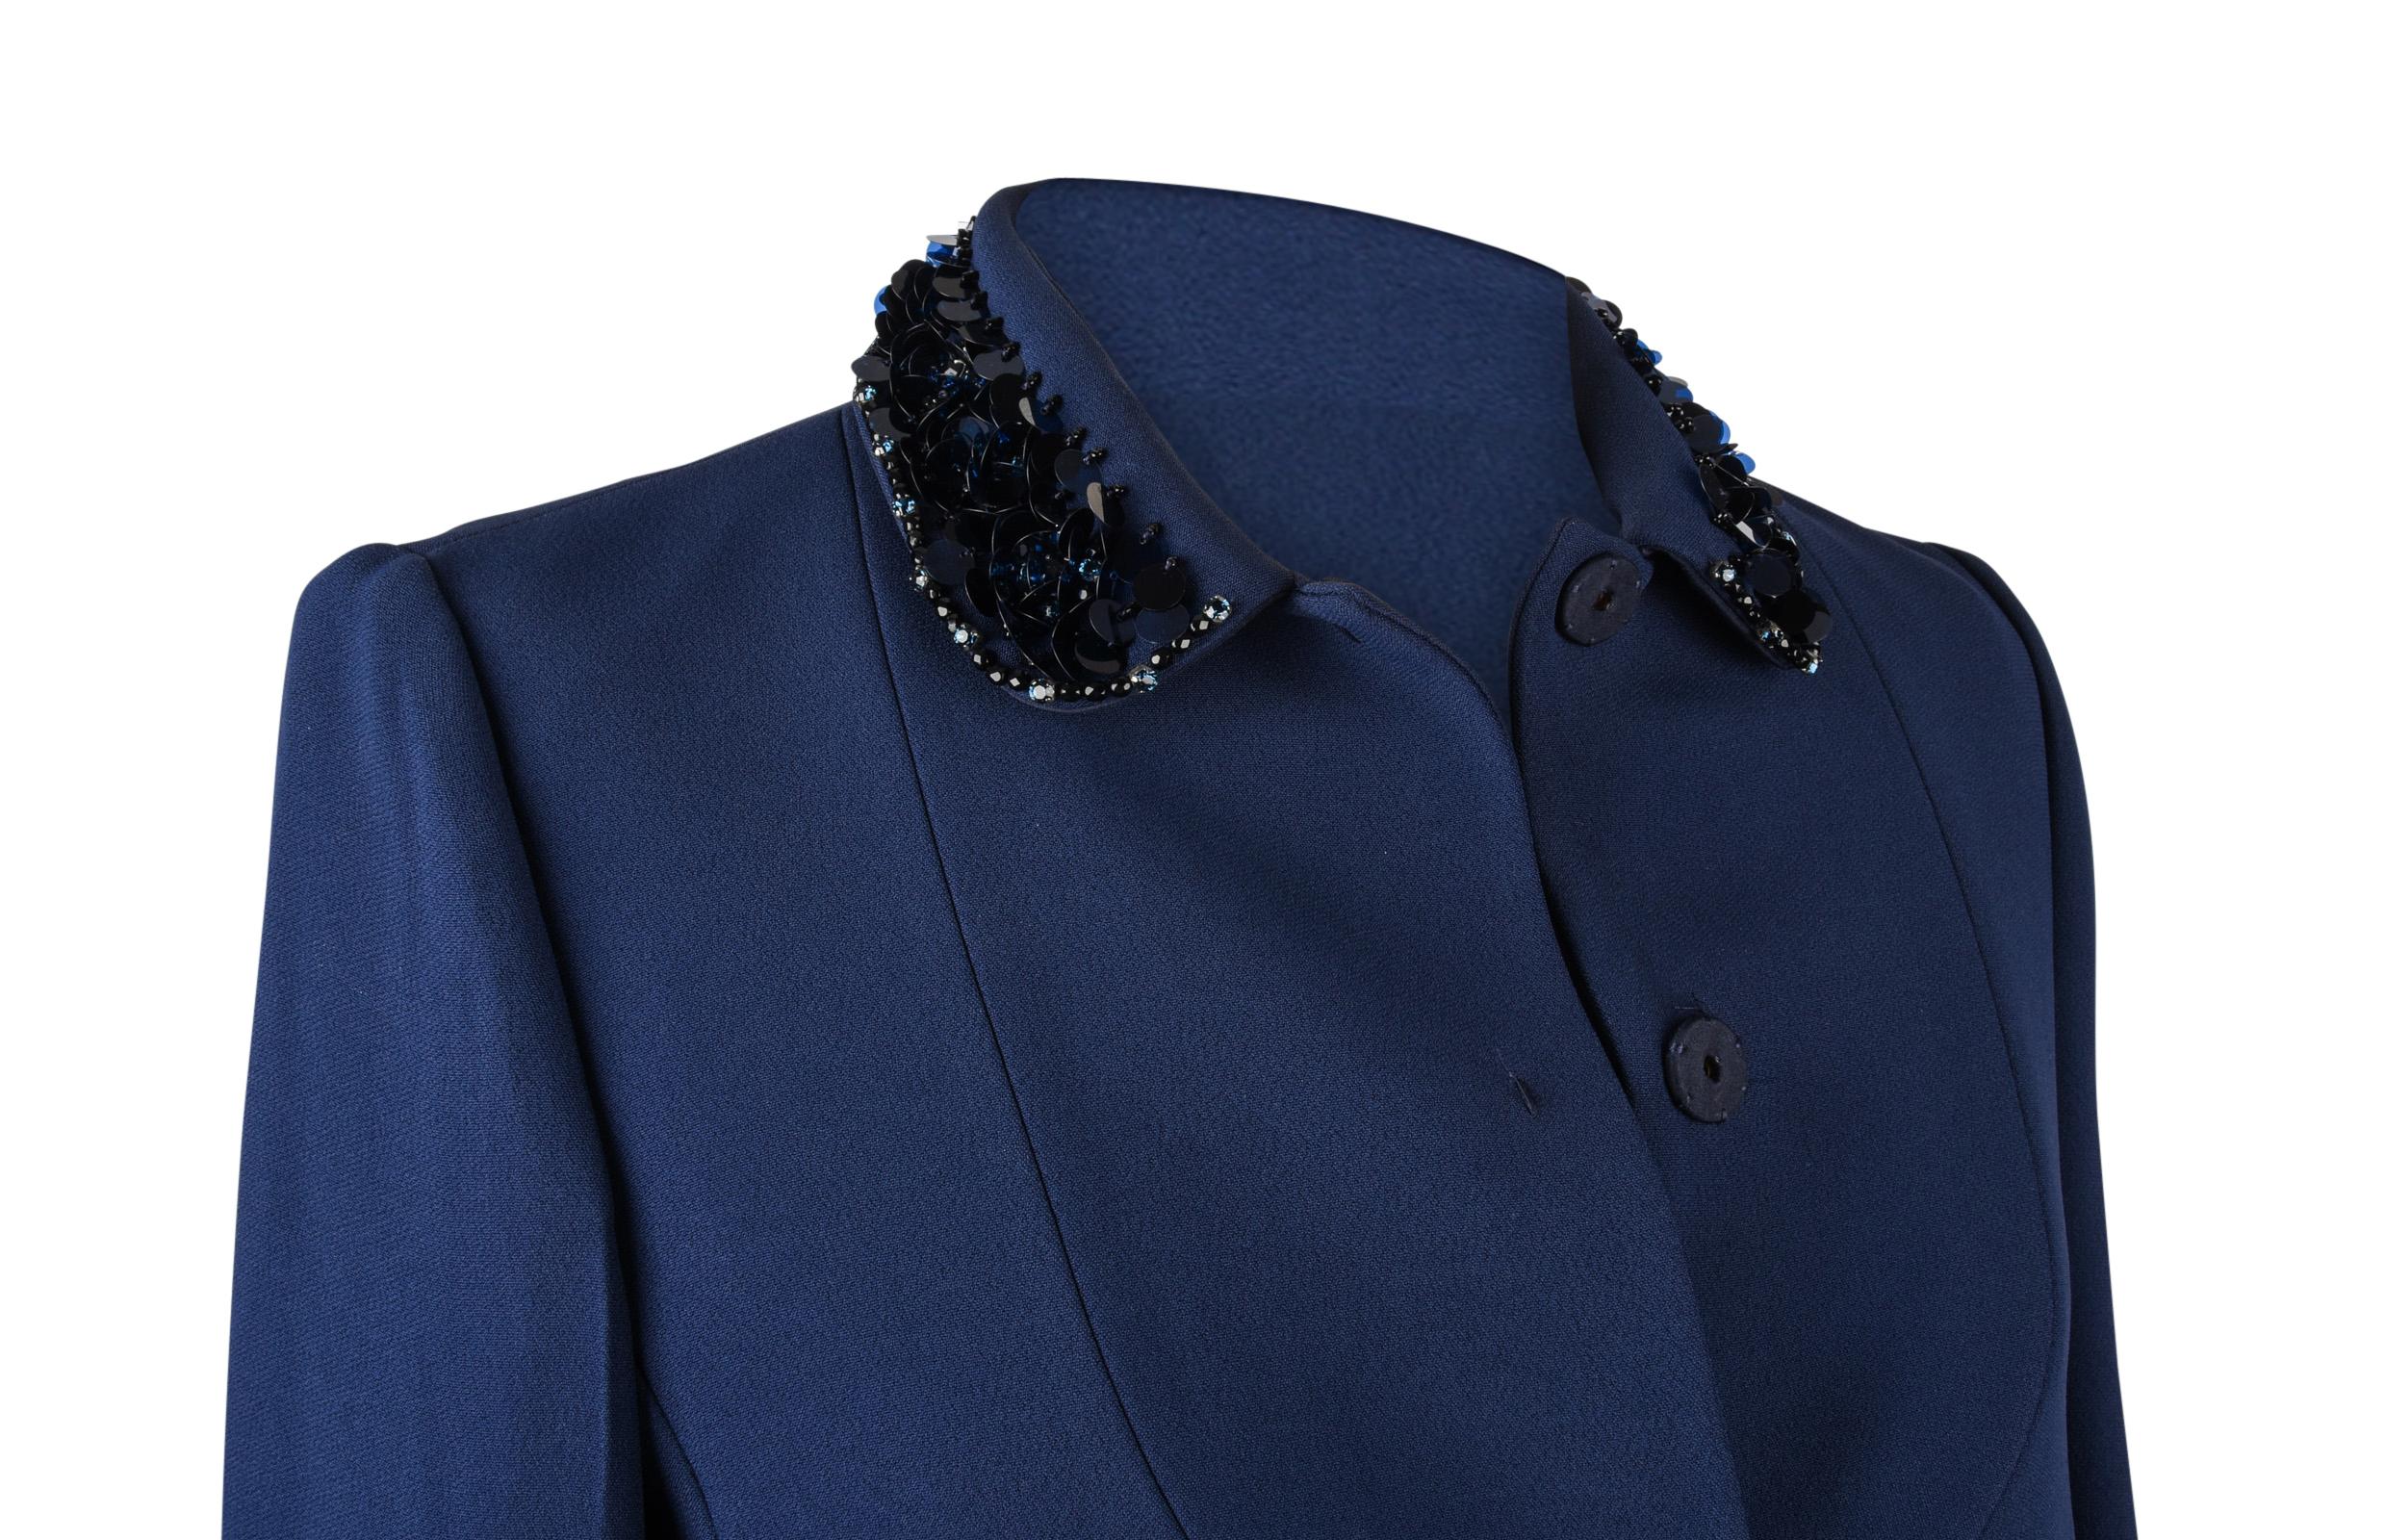 Miu Miu Jacket Navy Embellished Collar / Pockets 3/4 Sleeve 42 2